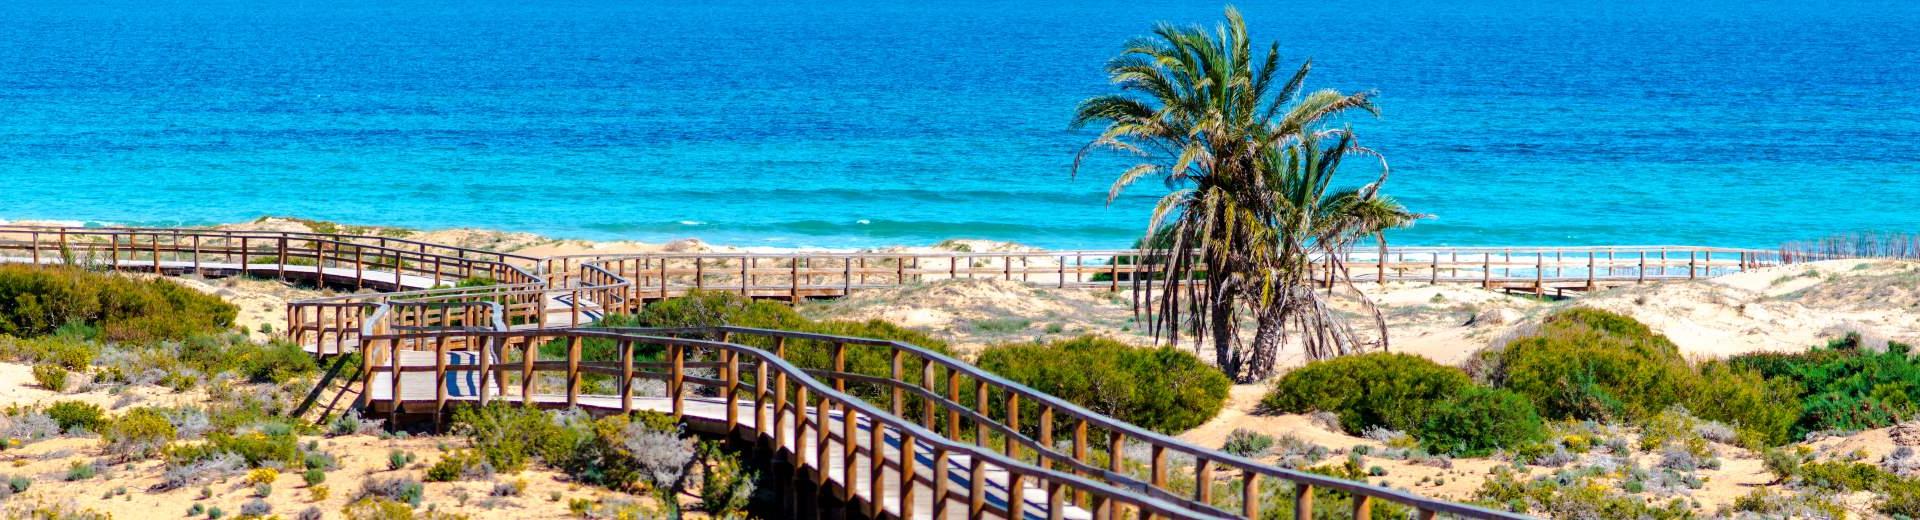 Vakantiehuis Playa del Ingles – voor de echte strandliefhebber - EuroRelais